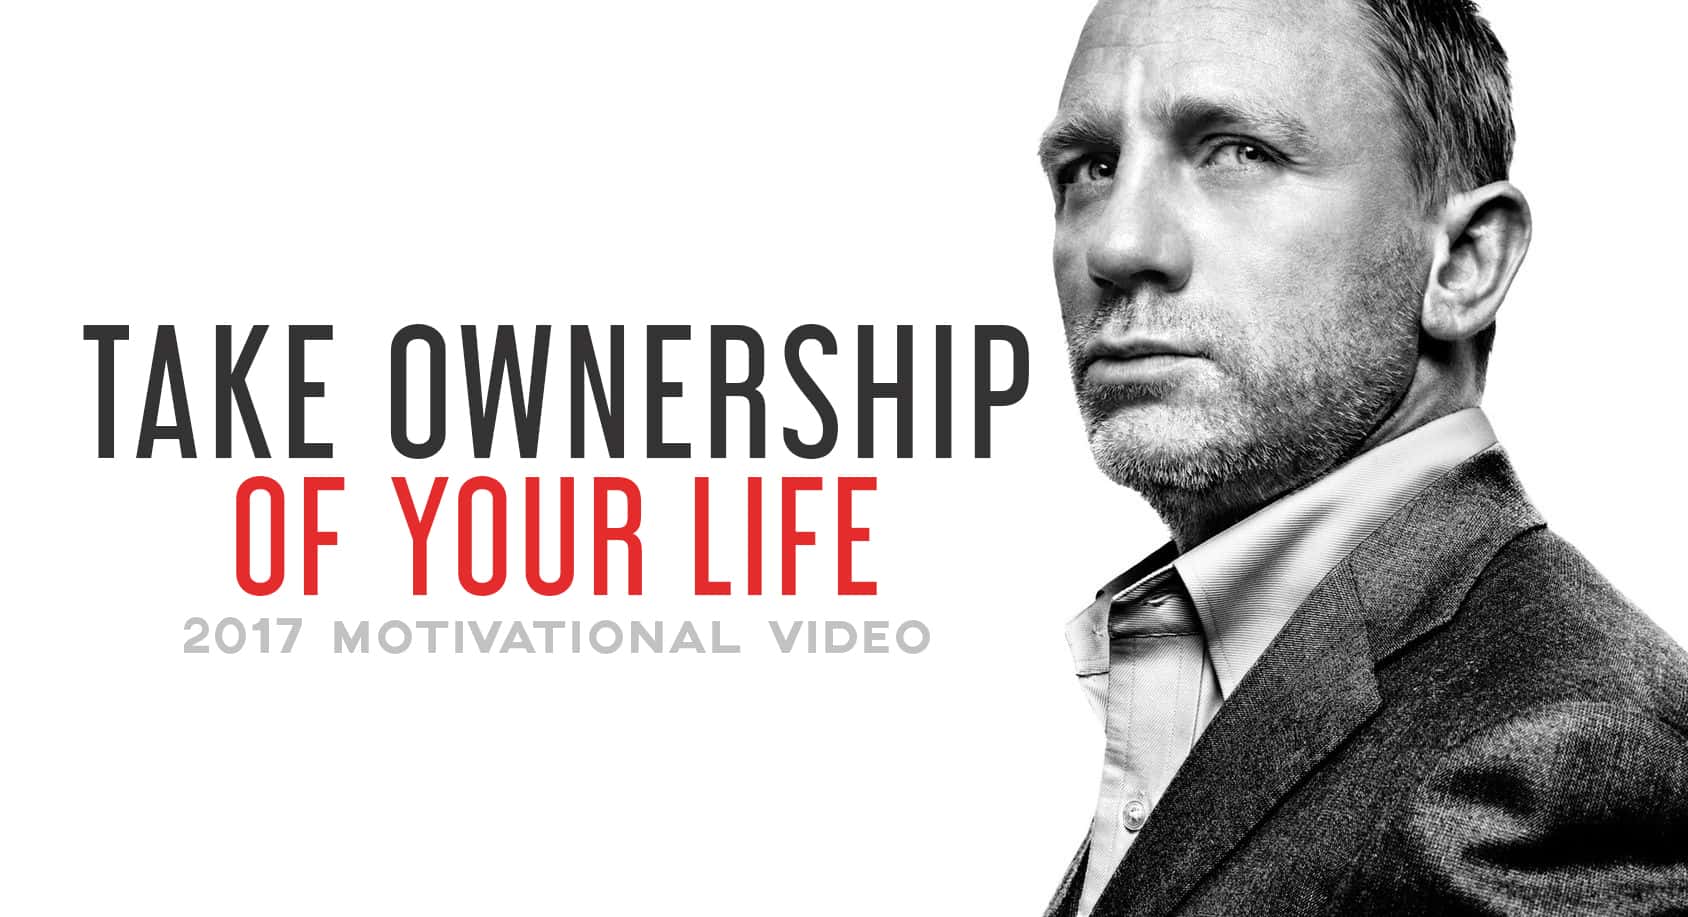 TAKEOWNERSHIPEX. Take ownership. Take owners